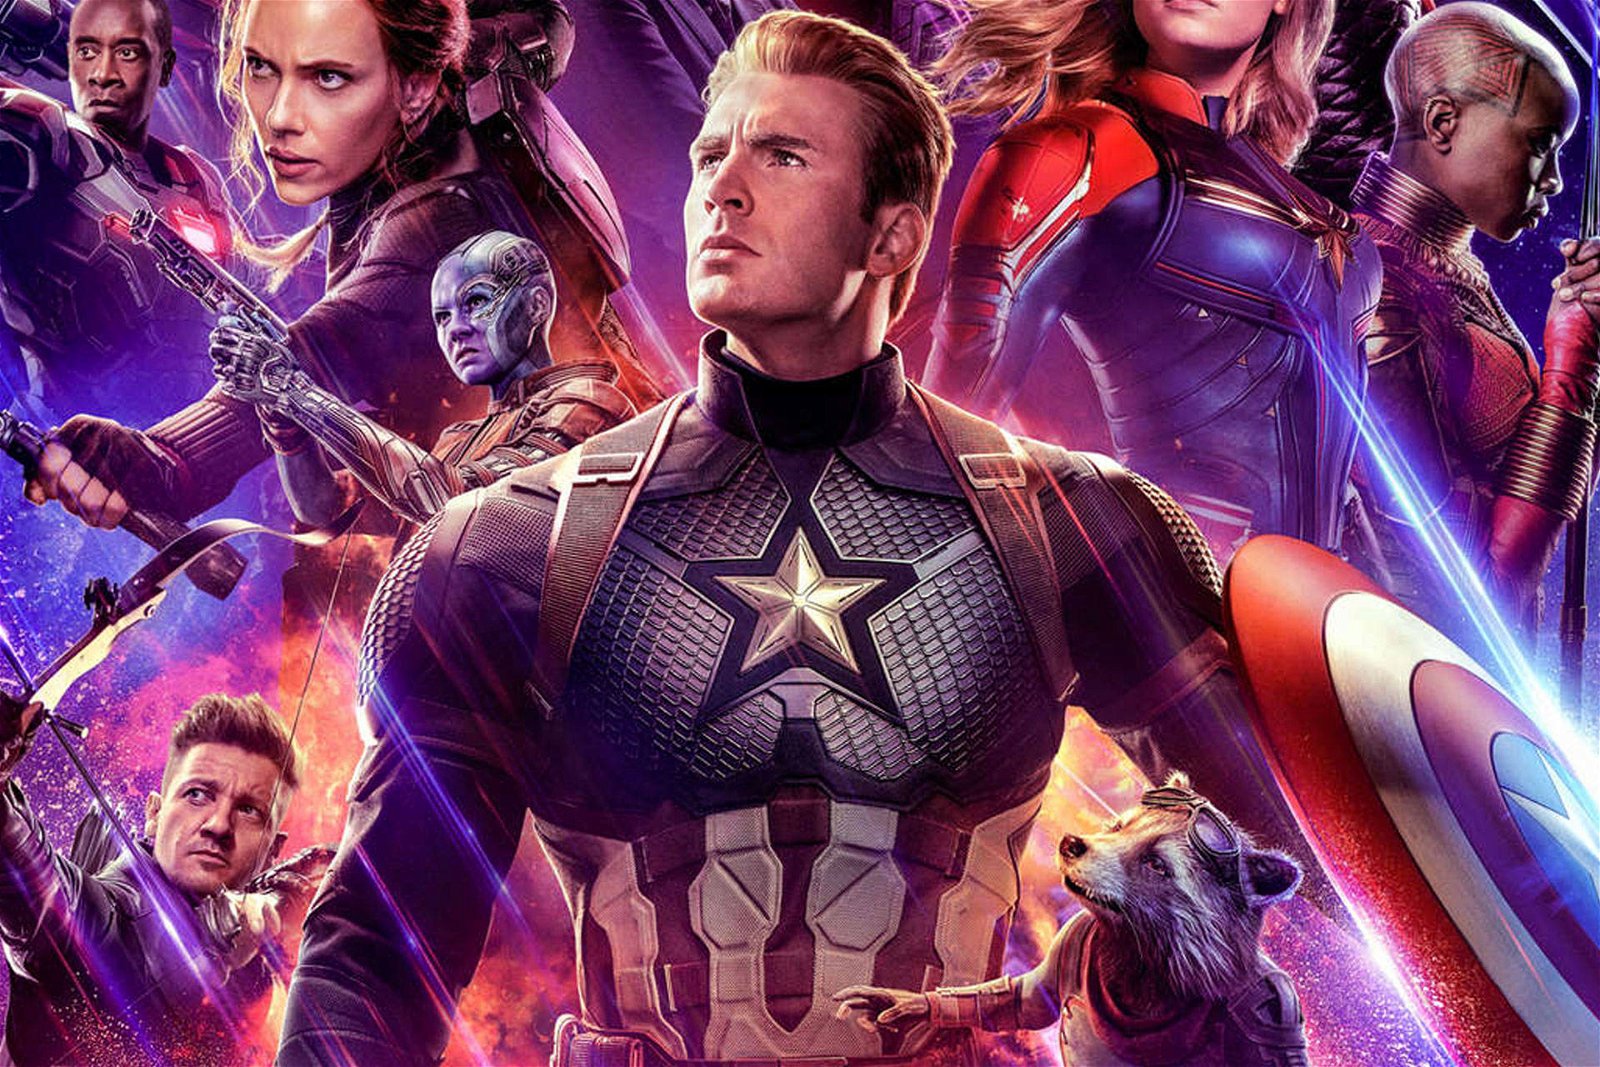 Immagine di Disney+: Avengers: Endgame sarà disponibile al lancio